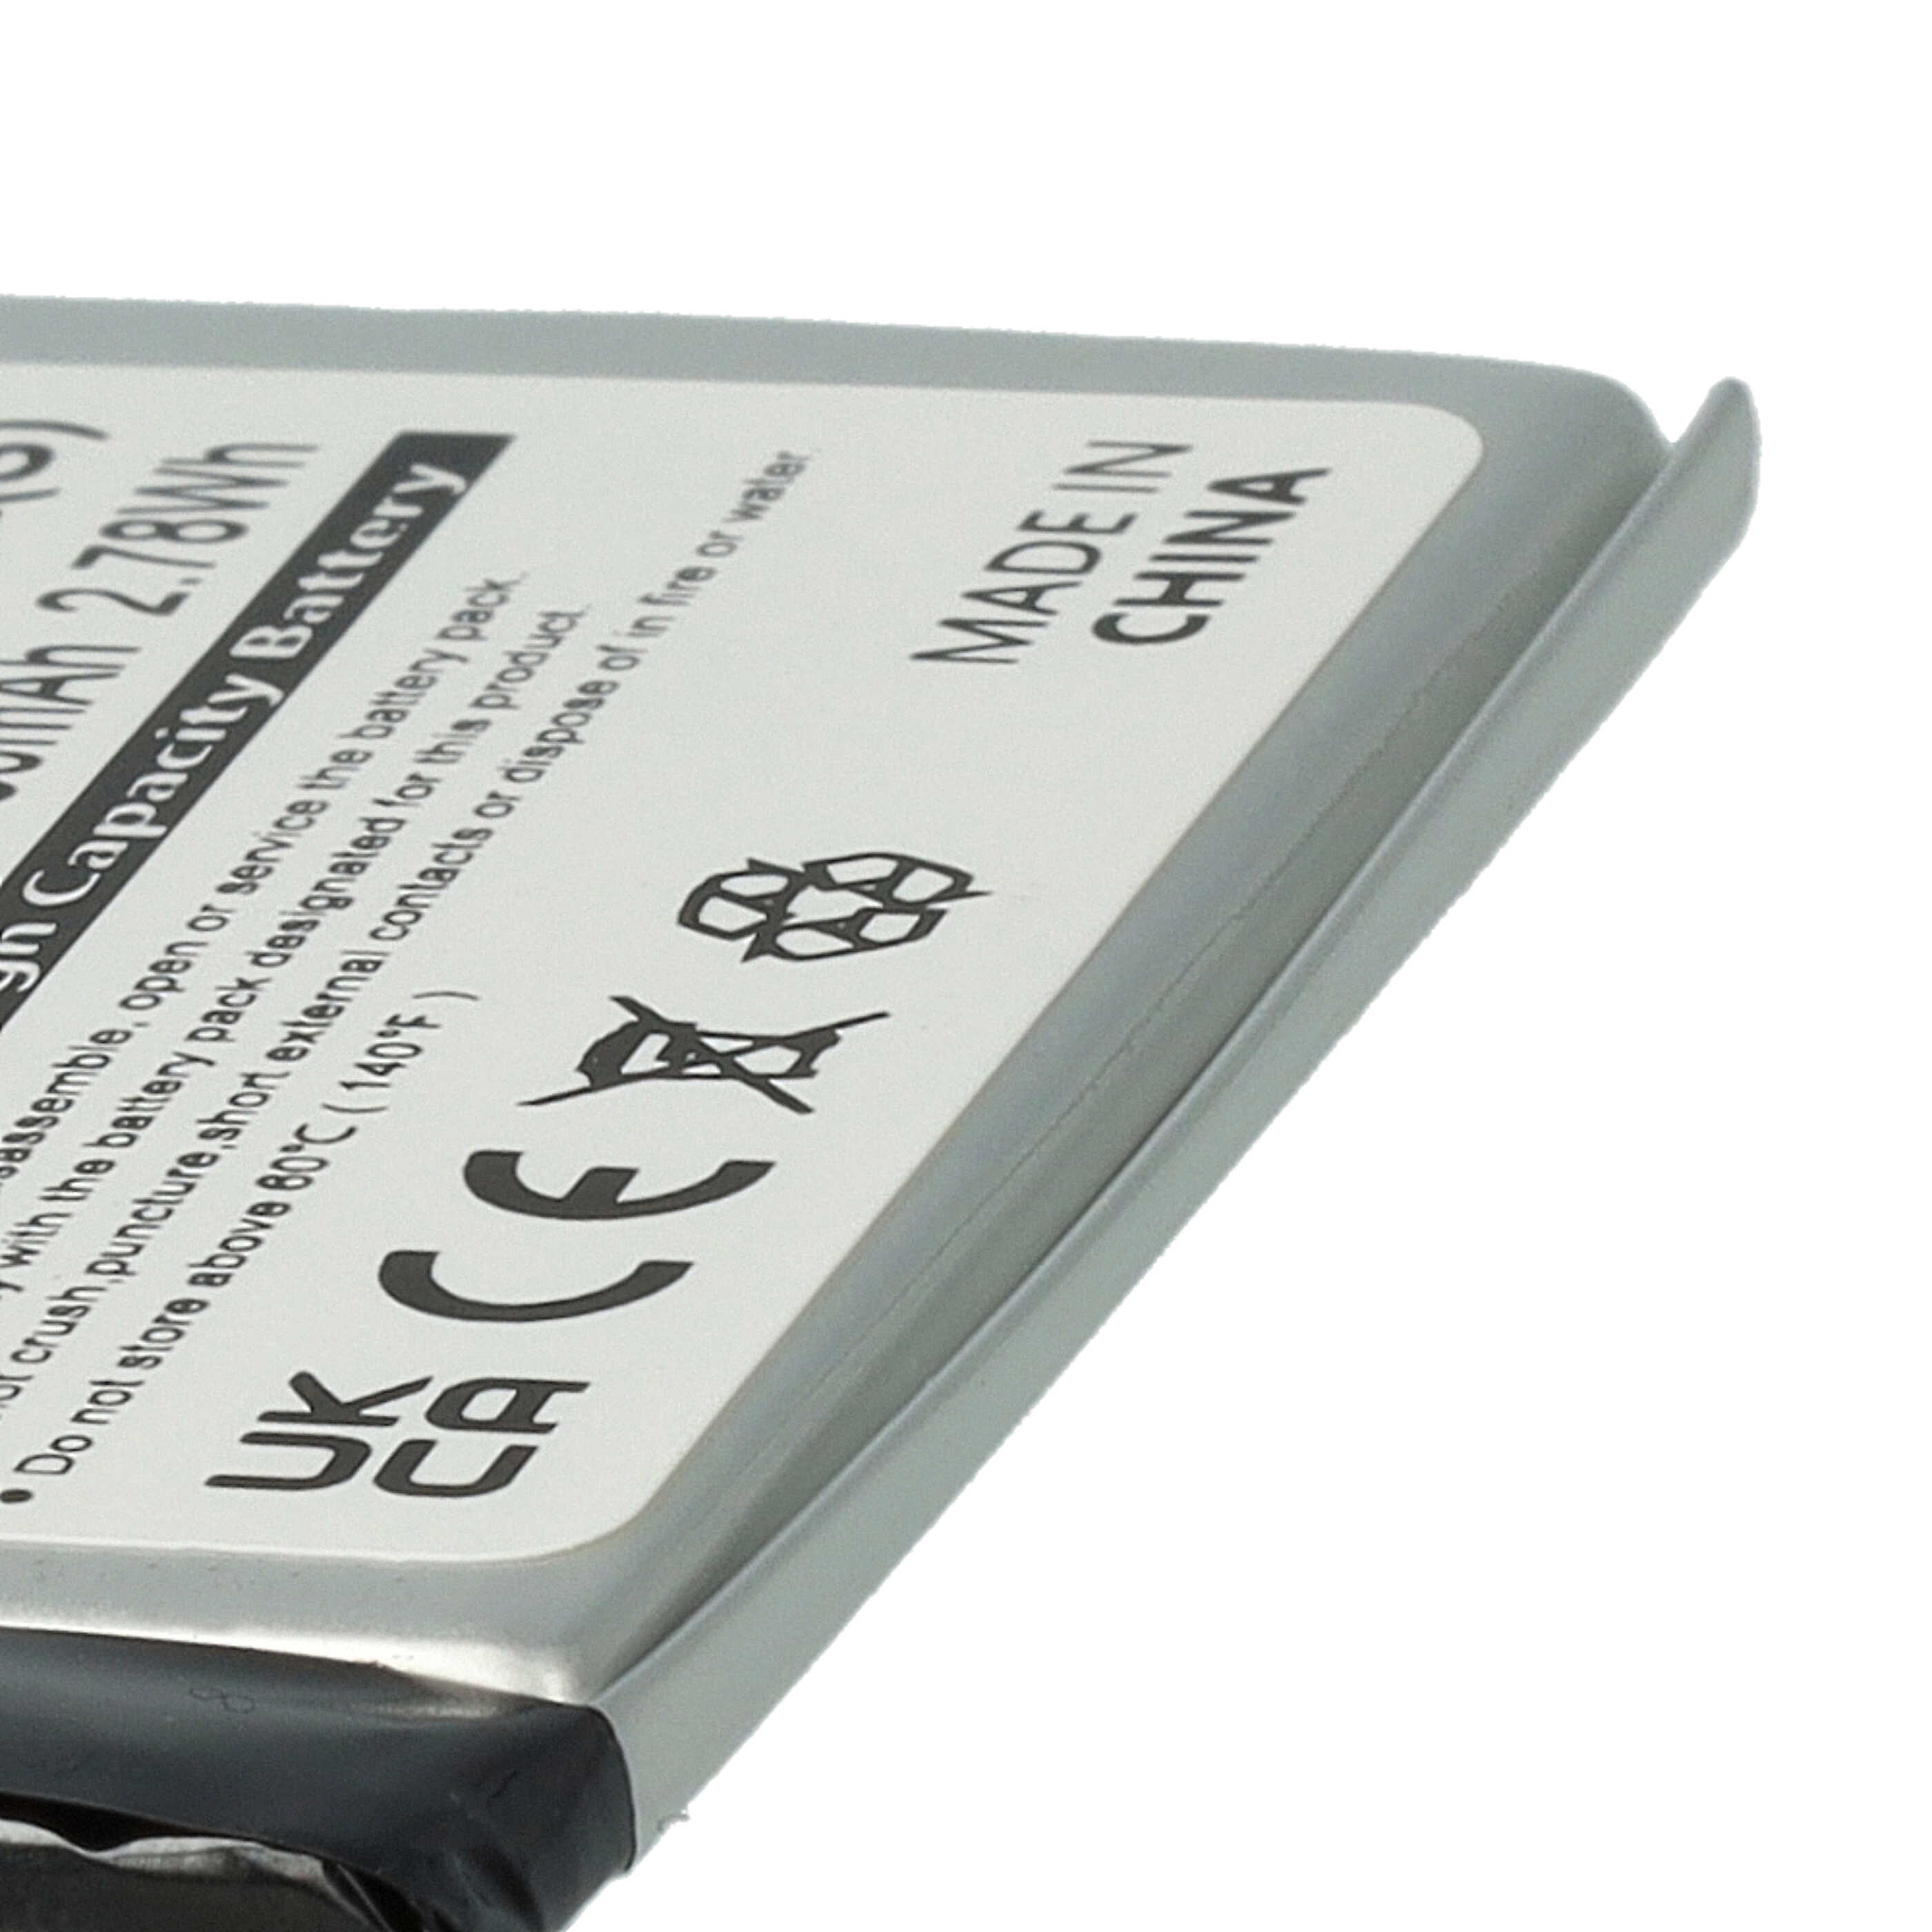 Batterie remplace Sony 1-756-769-11 pour liseuse ebook - 750mAh 3,7V Li-polymère